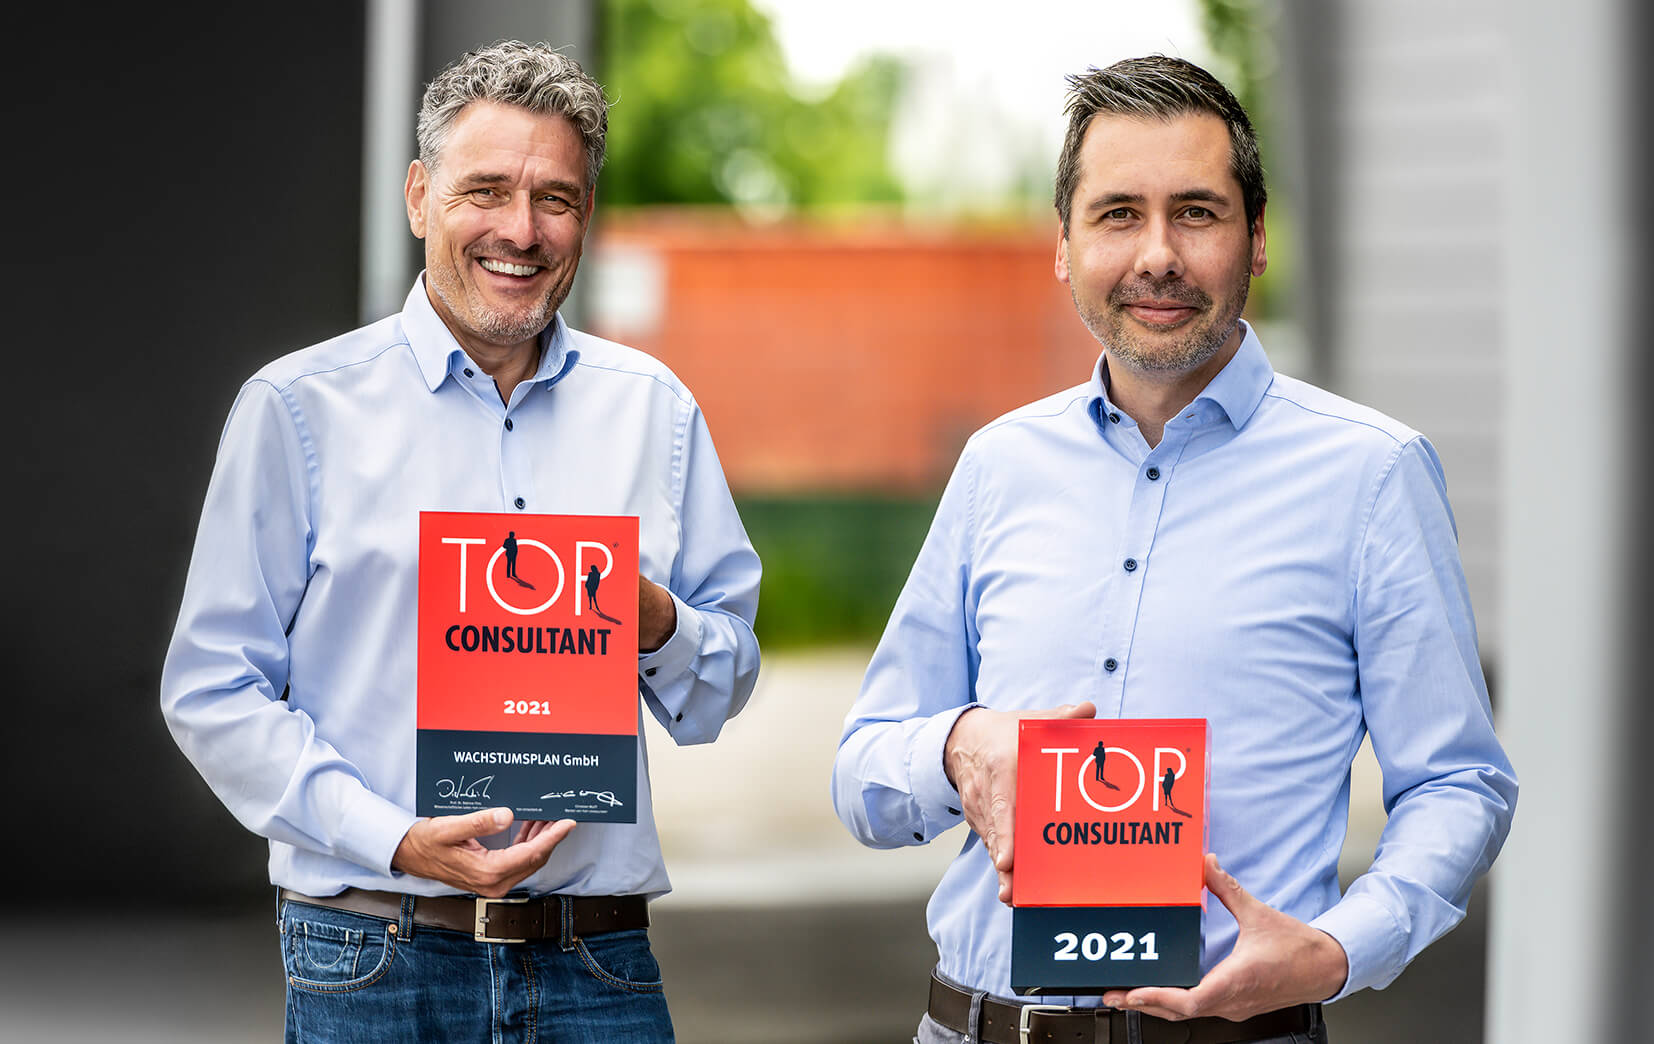 Wir bedanken uns herzlich bei unseren Kunden für dieses Vertrauen und die partnerschaftliche Zusammenarbeit sagen die TOP CONSULTANT 2021 WACHSTUMSPLAN GmbH aus Münster